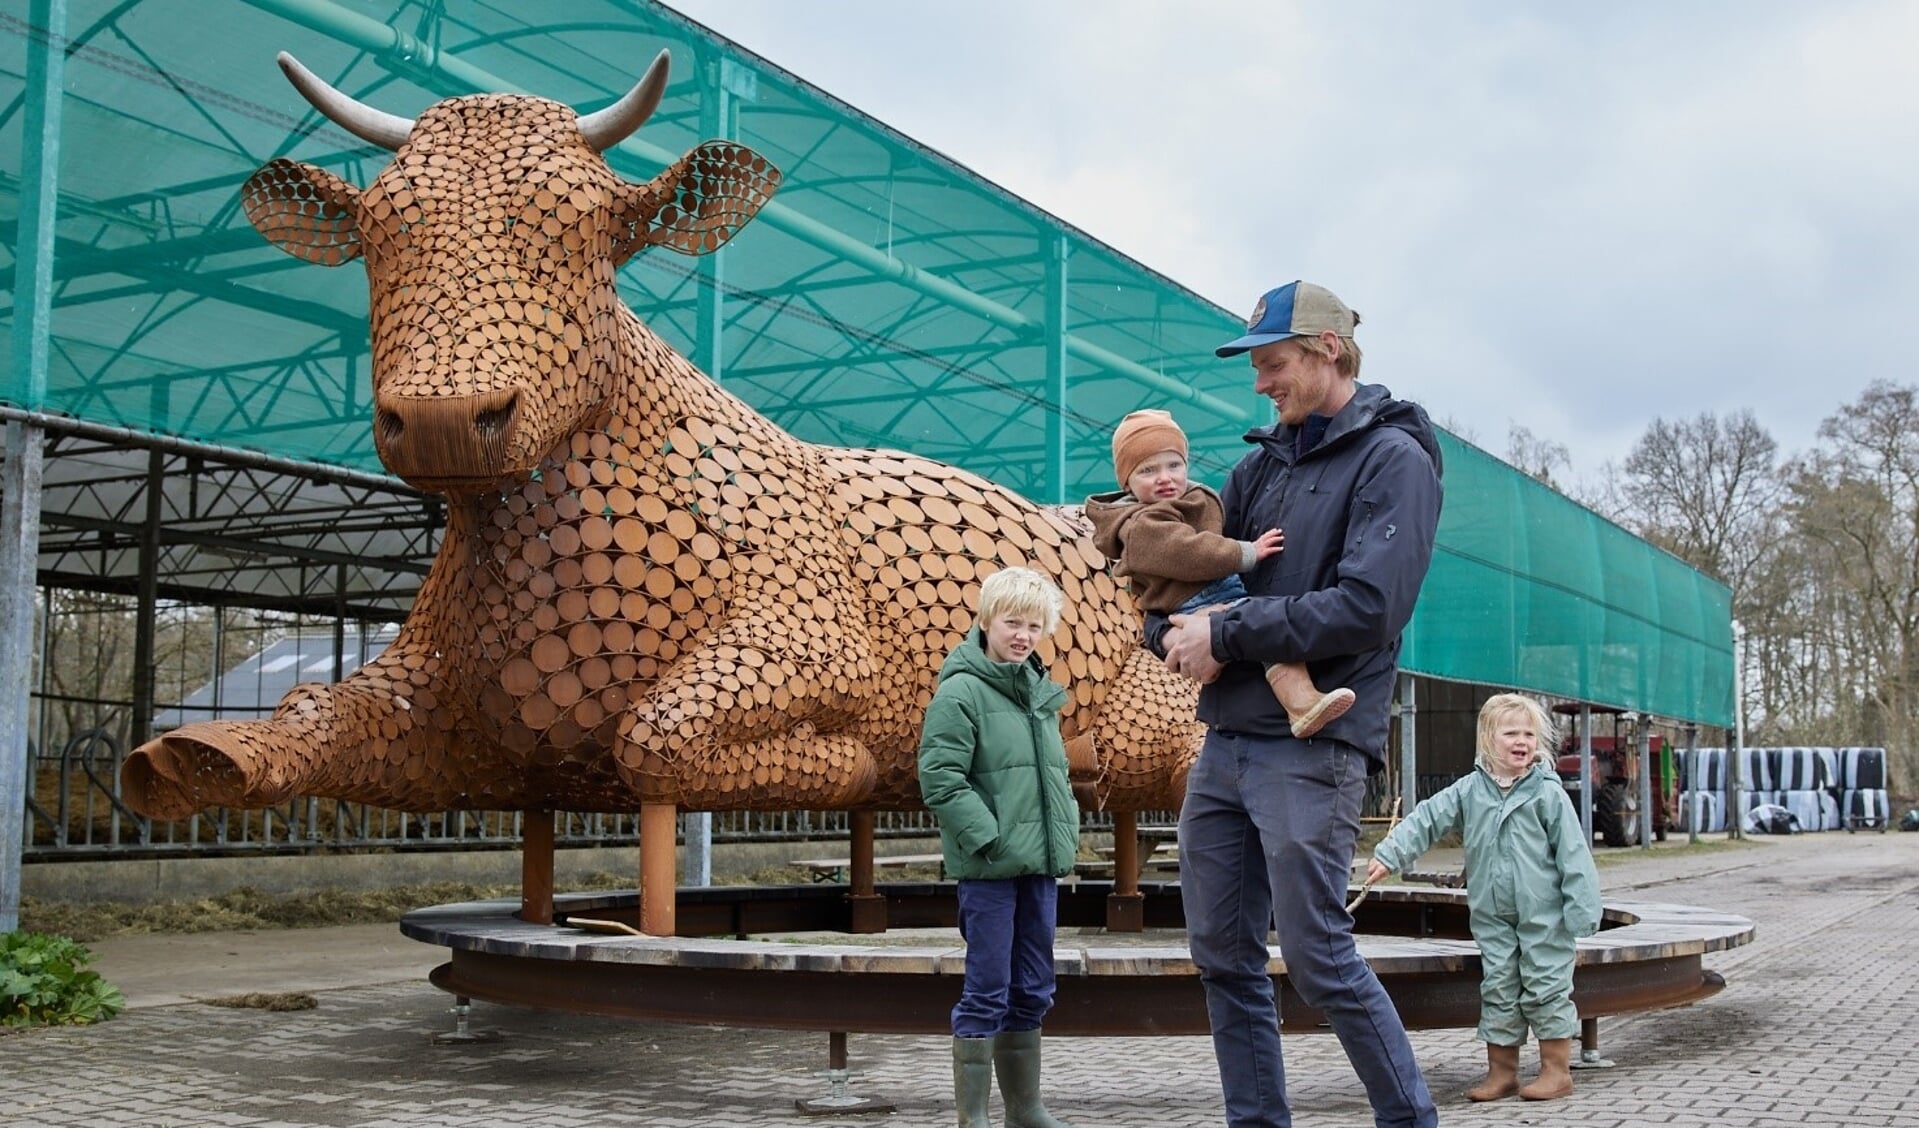 Biodynamische melkveehouder Guus Imhoff met zijn gezin bij 'Ahimsa, de rustende koe' van beeldend kunstenaar Jantien Mook op Urtica de Vijfsprong. Foto: Annelijn Steenbruggen